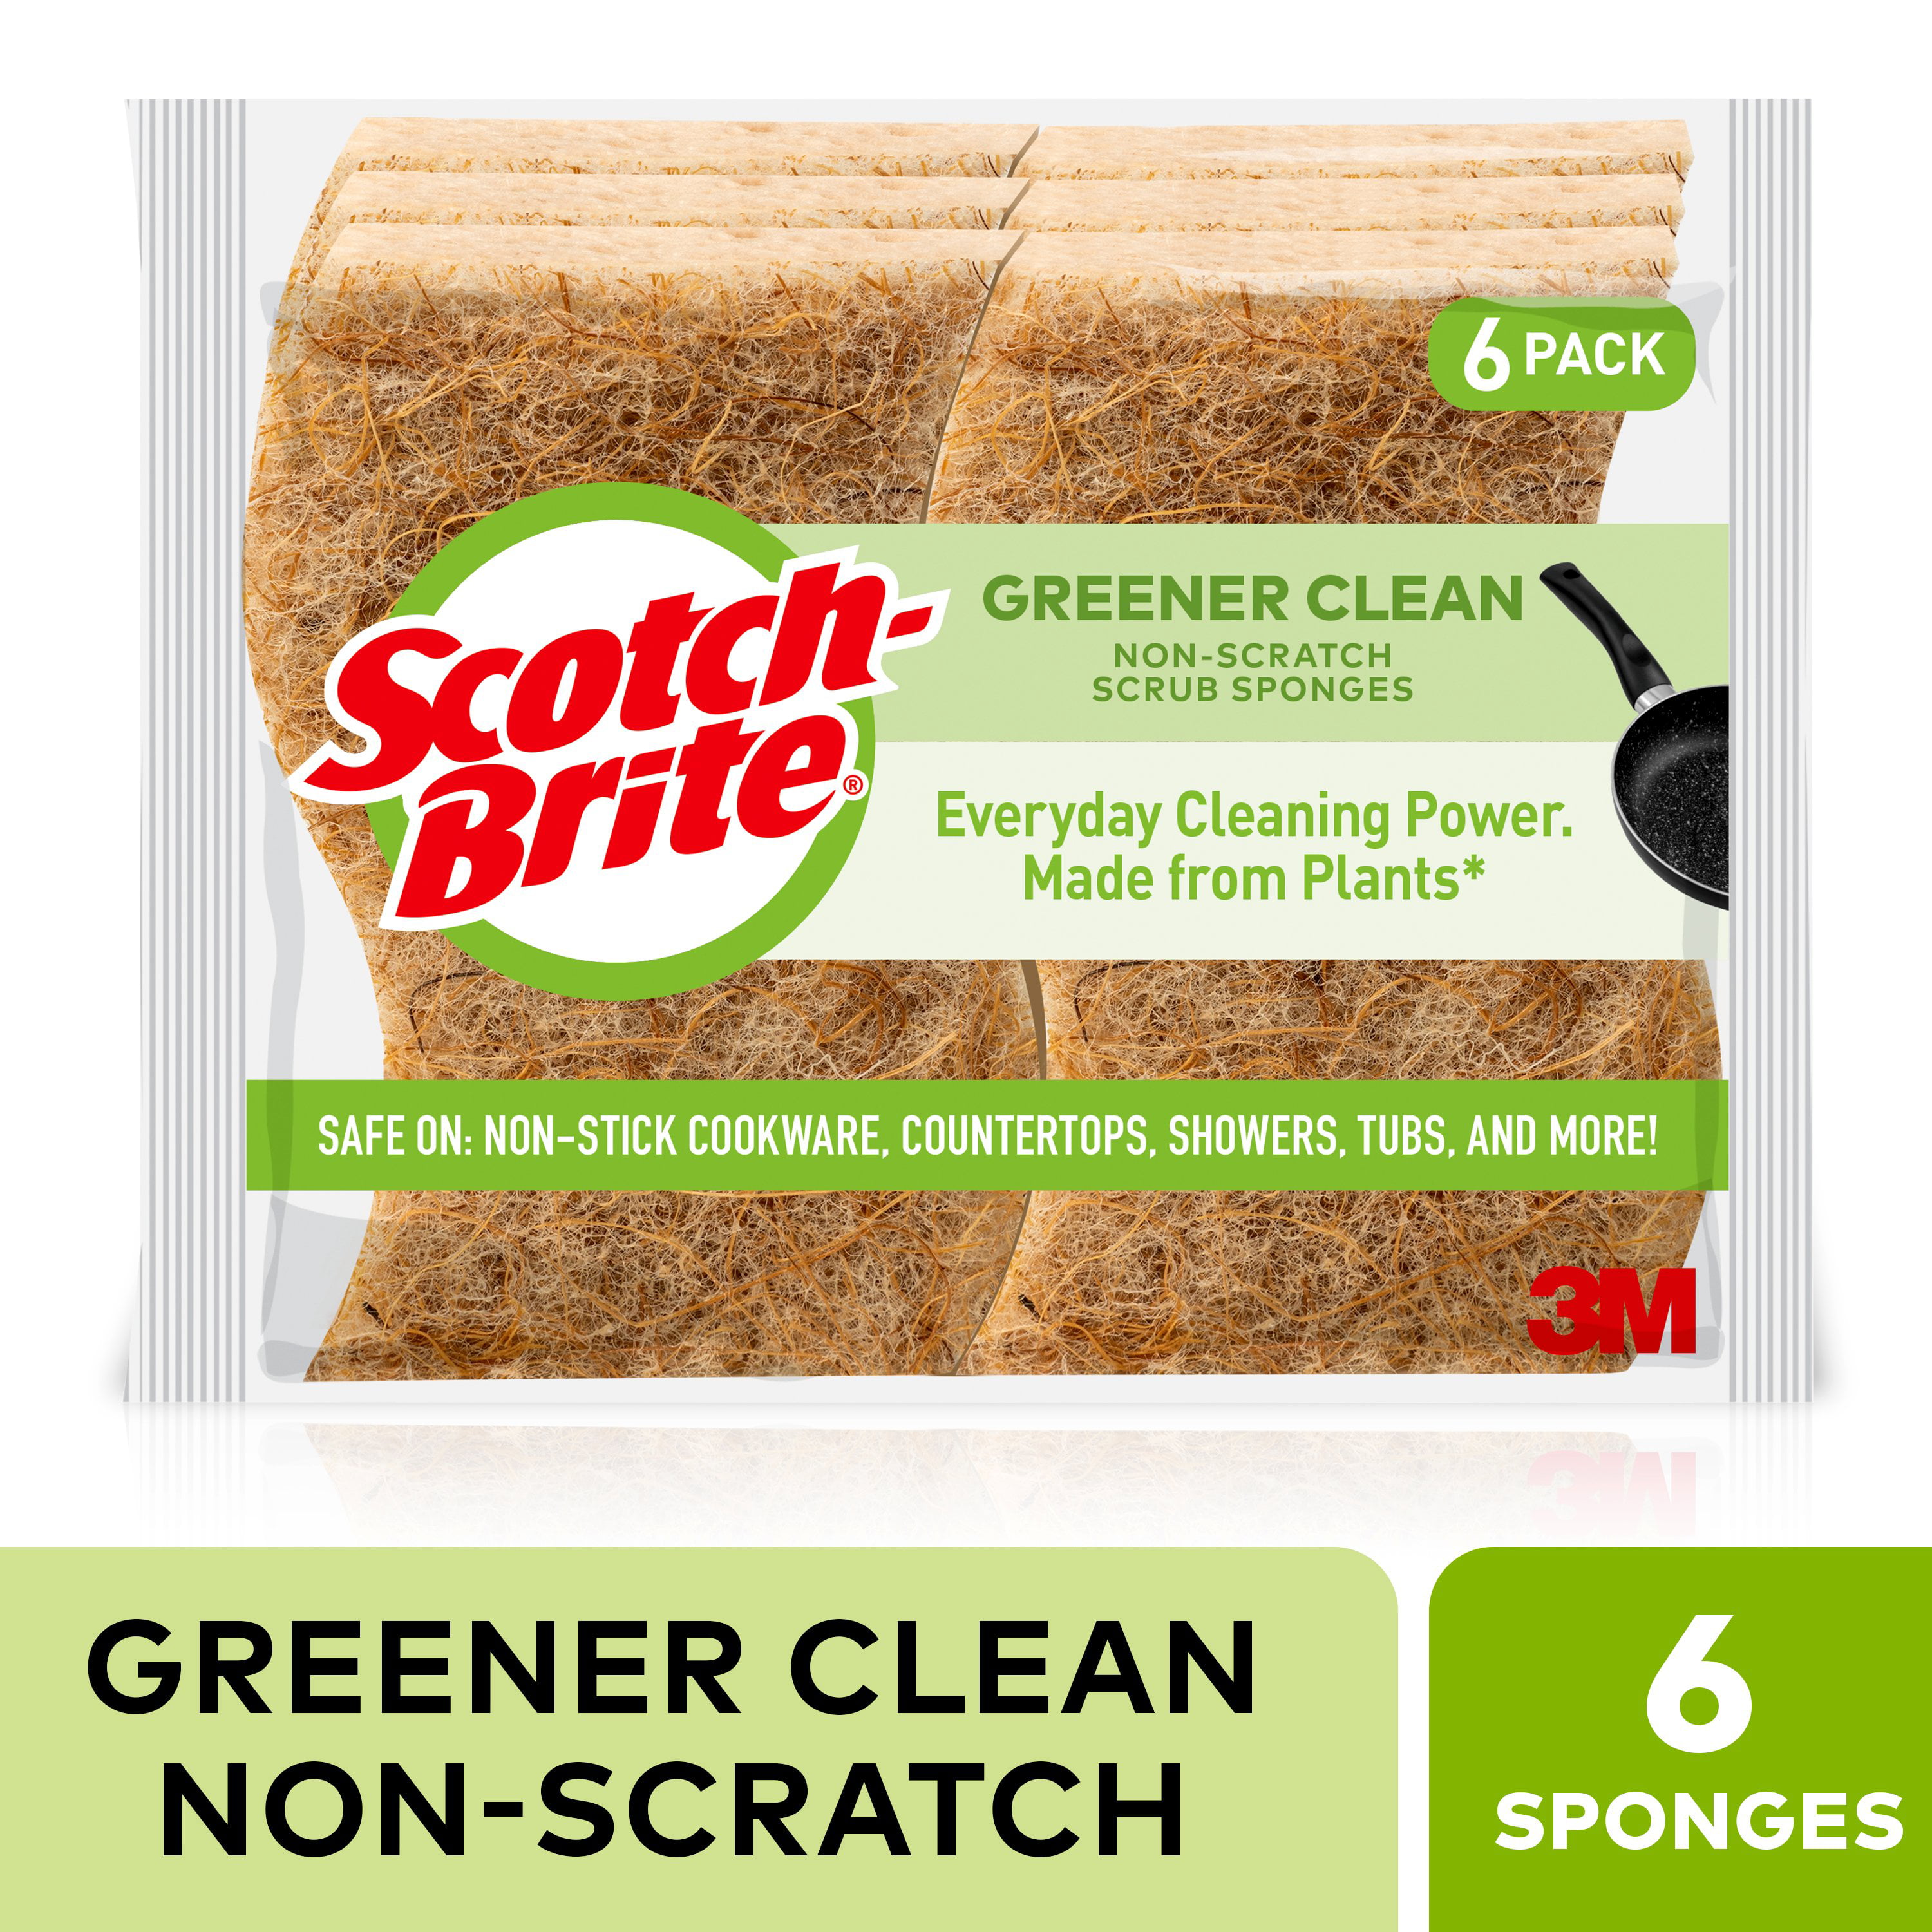 Scotch-Brite Greener Clean Non-Scratch 